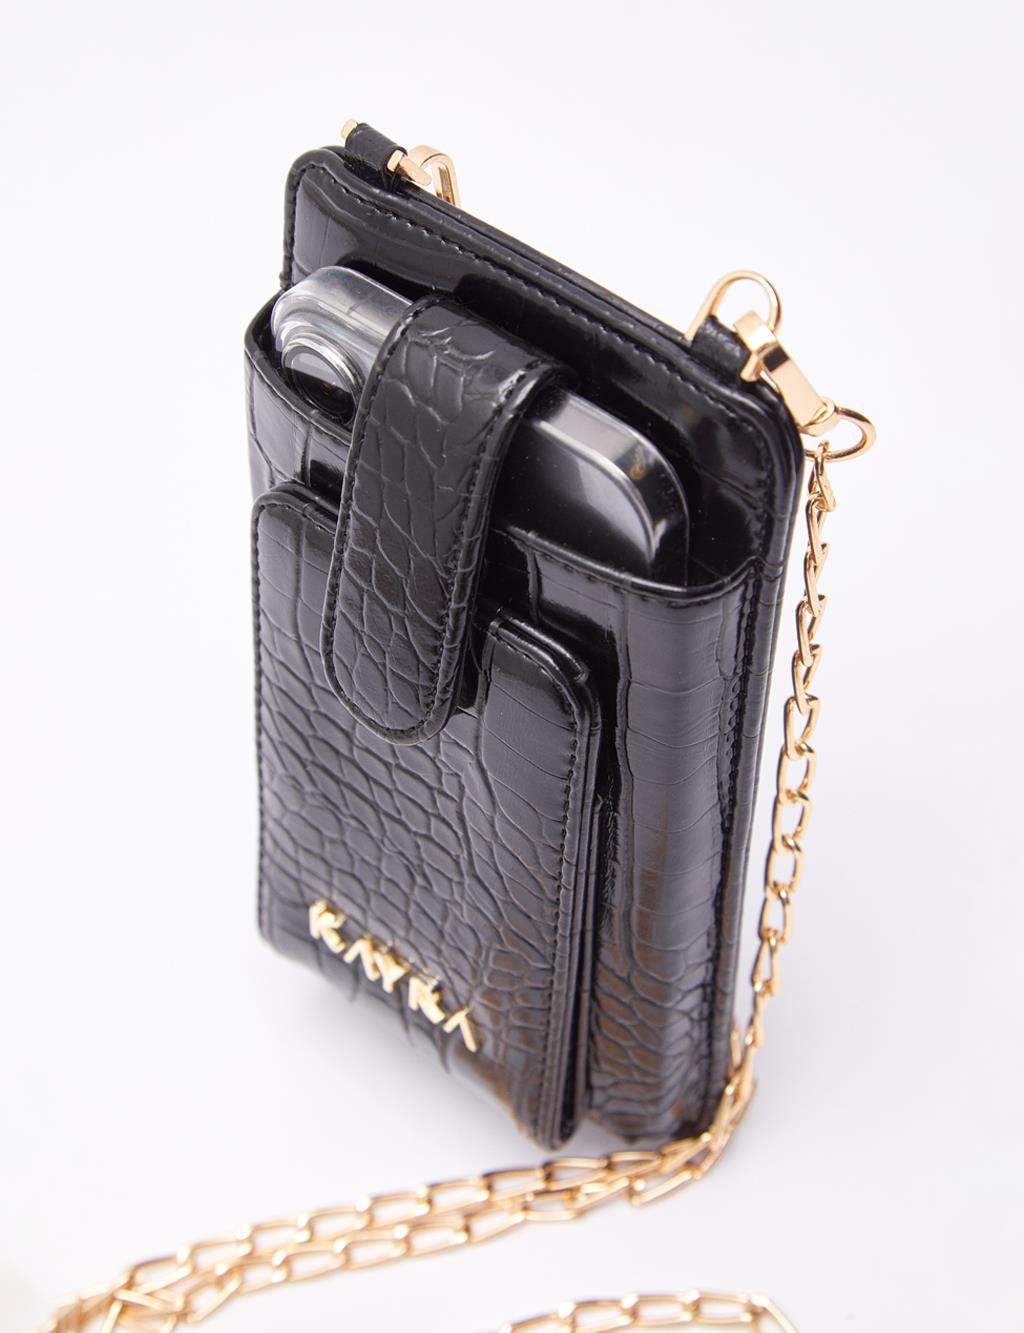 Croco Patterned Bag Wallet Black